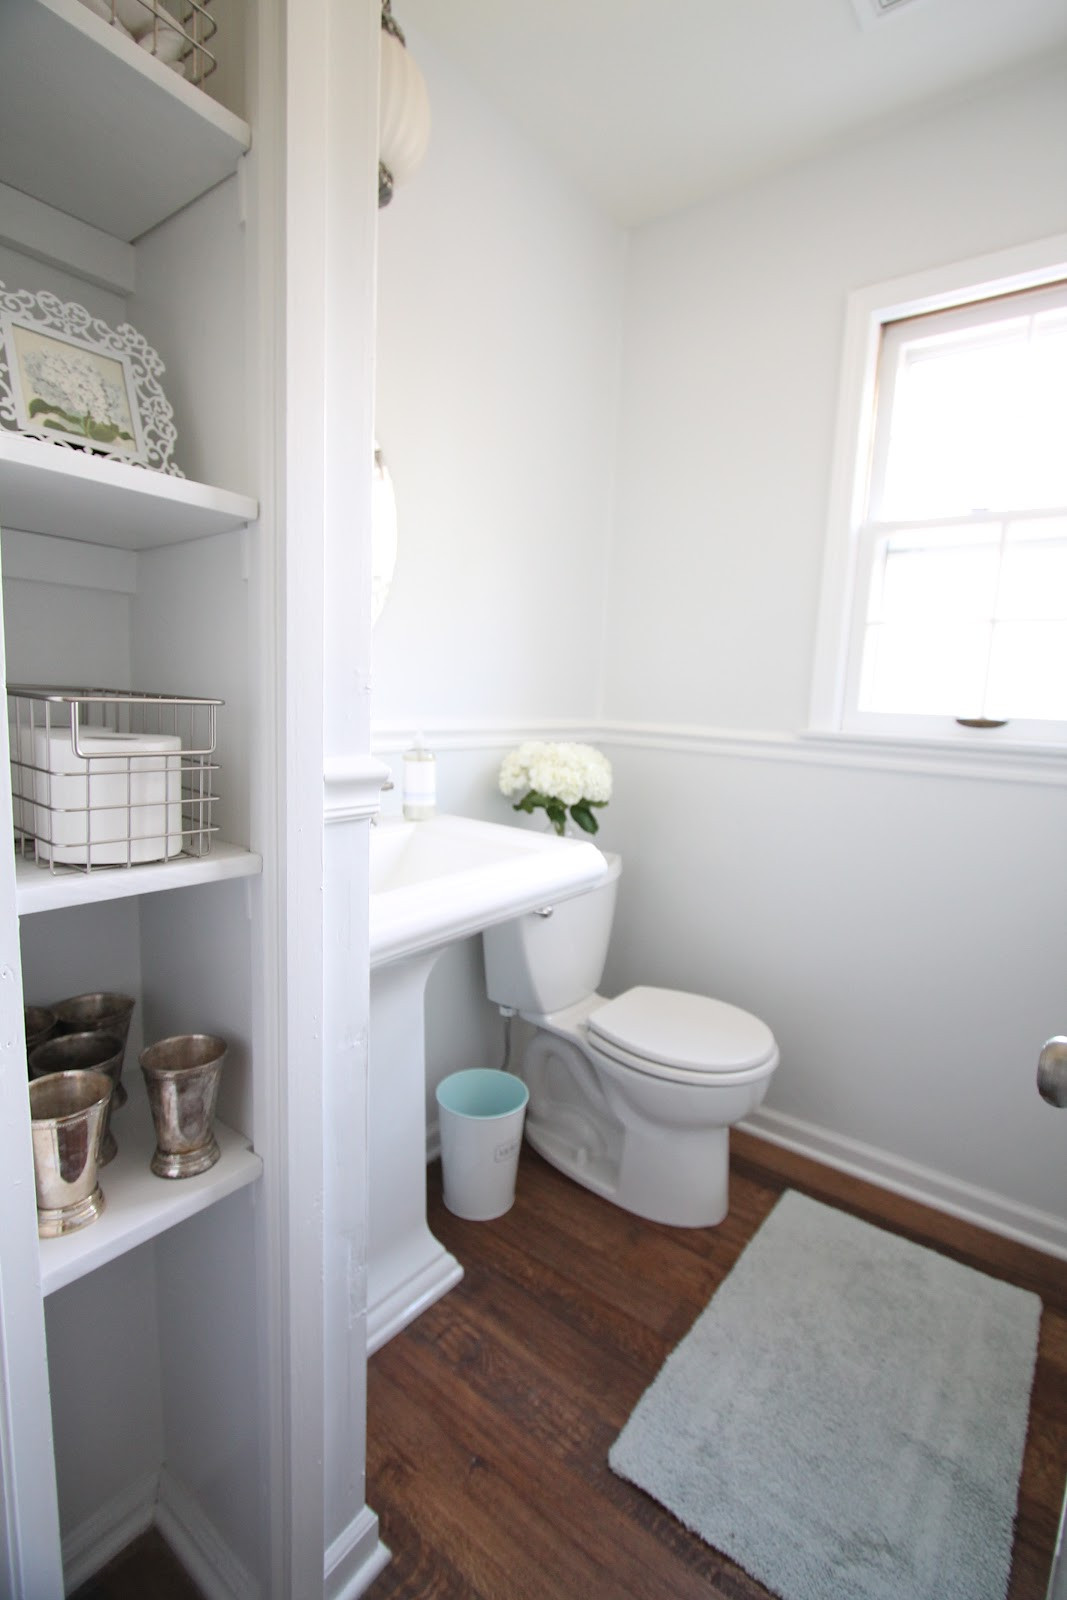 Best ideas about Bathroom Remodel DIY
. Save or Pin DIY Bathroom Remodel Julie Blanner Now.